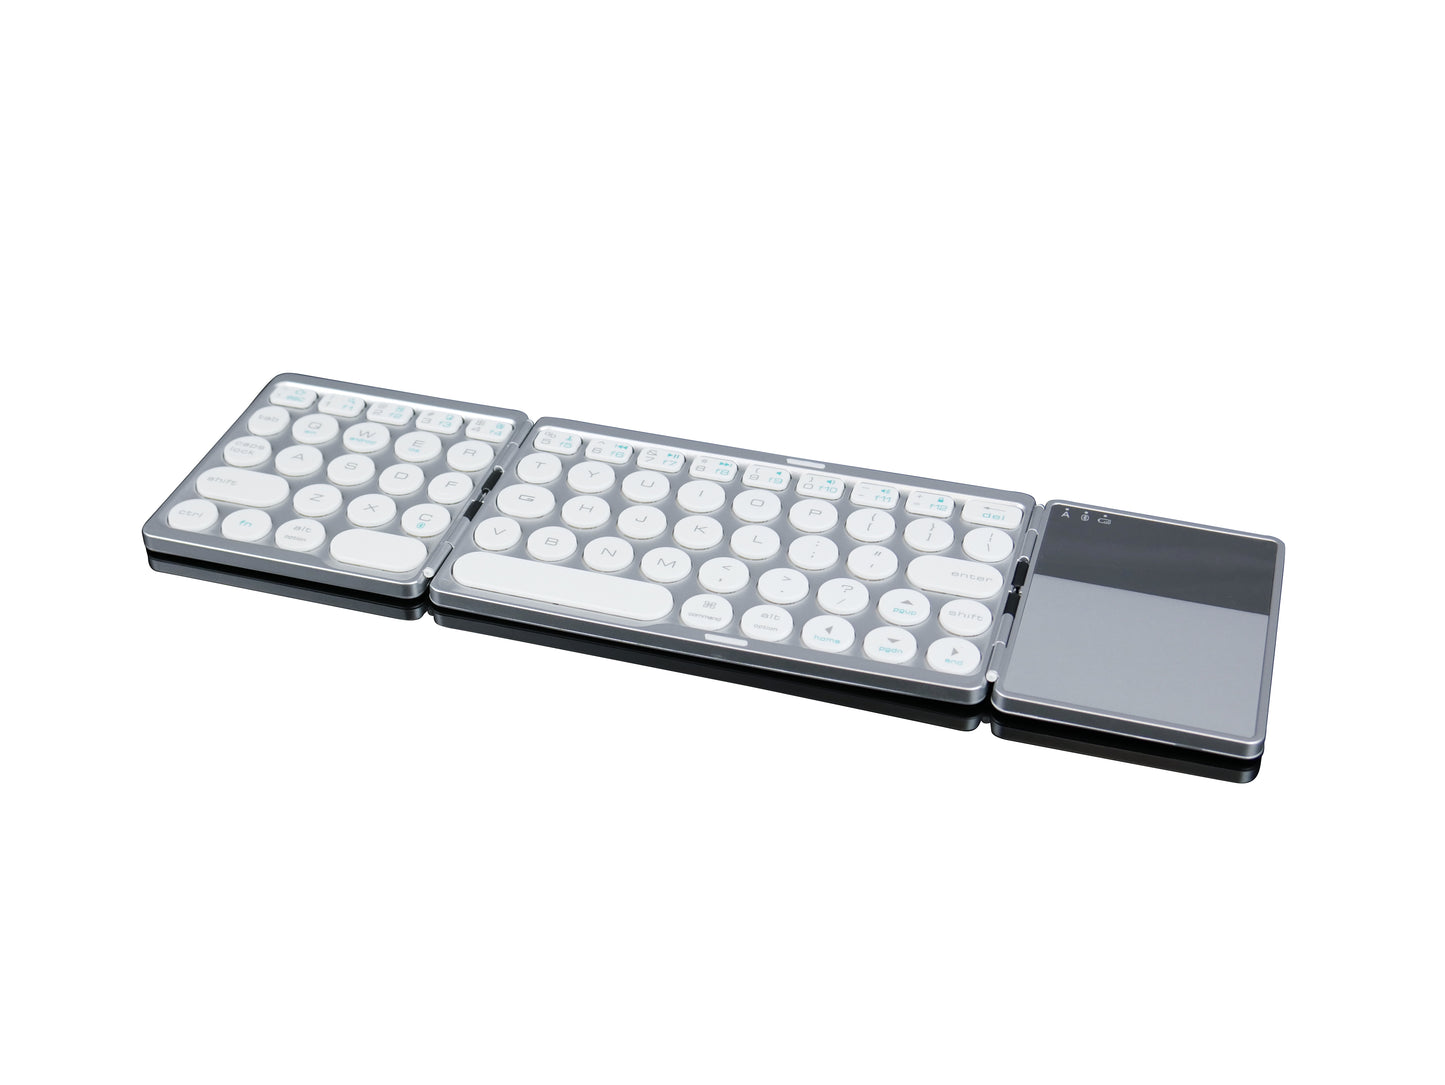 Compacto, elegante, teclado Bluetooth plegable con teclado táctilCLAW BS120